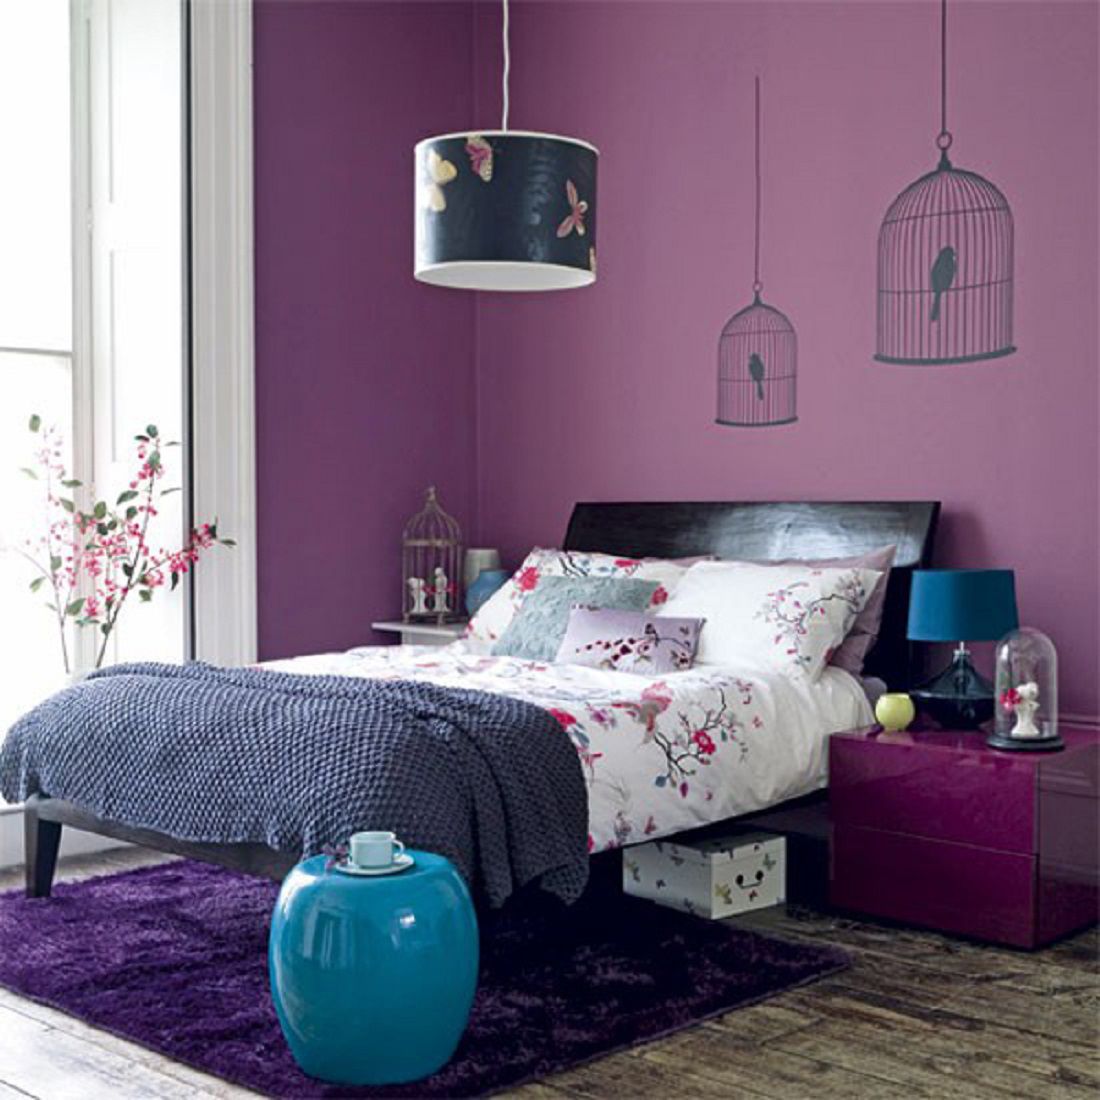 Thiết kế phòng ngủ màu tím kết hợp gam màu trắng, xám và xanh